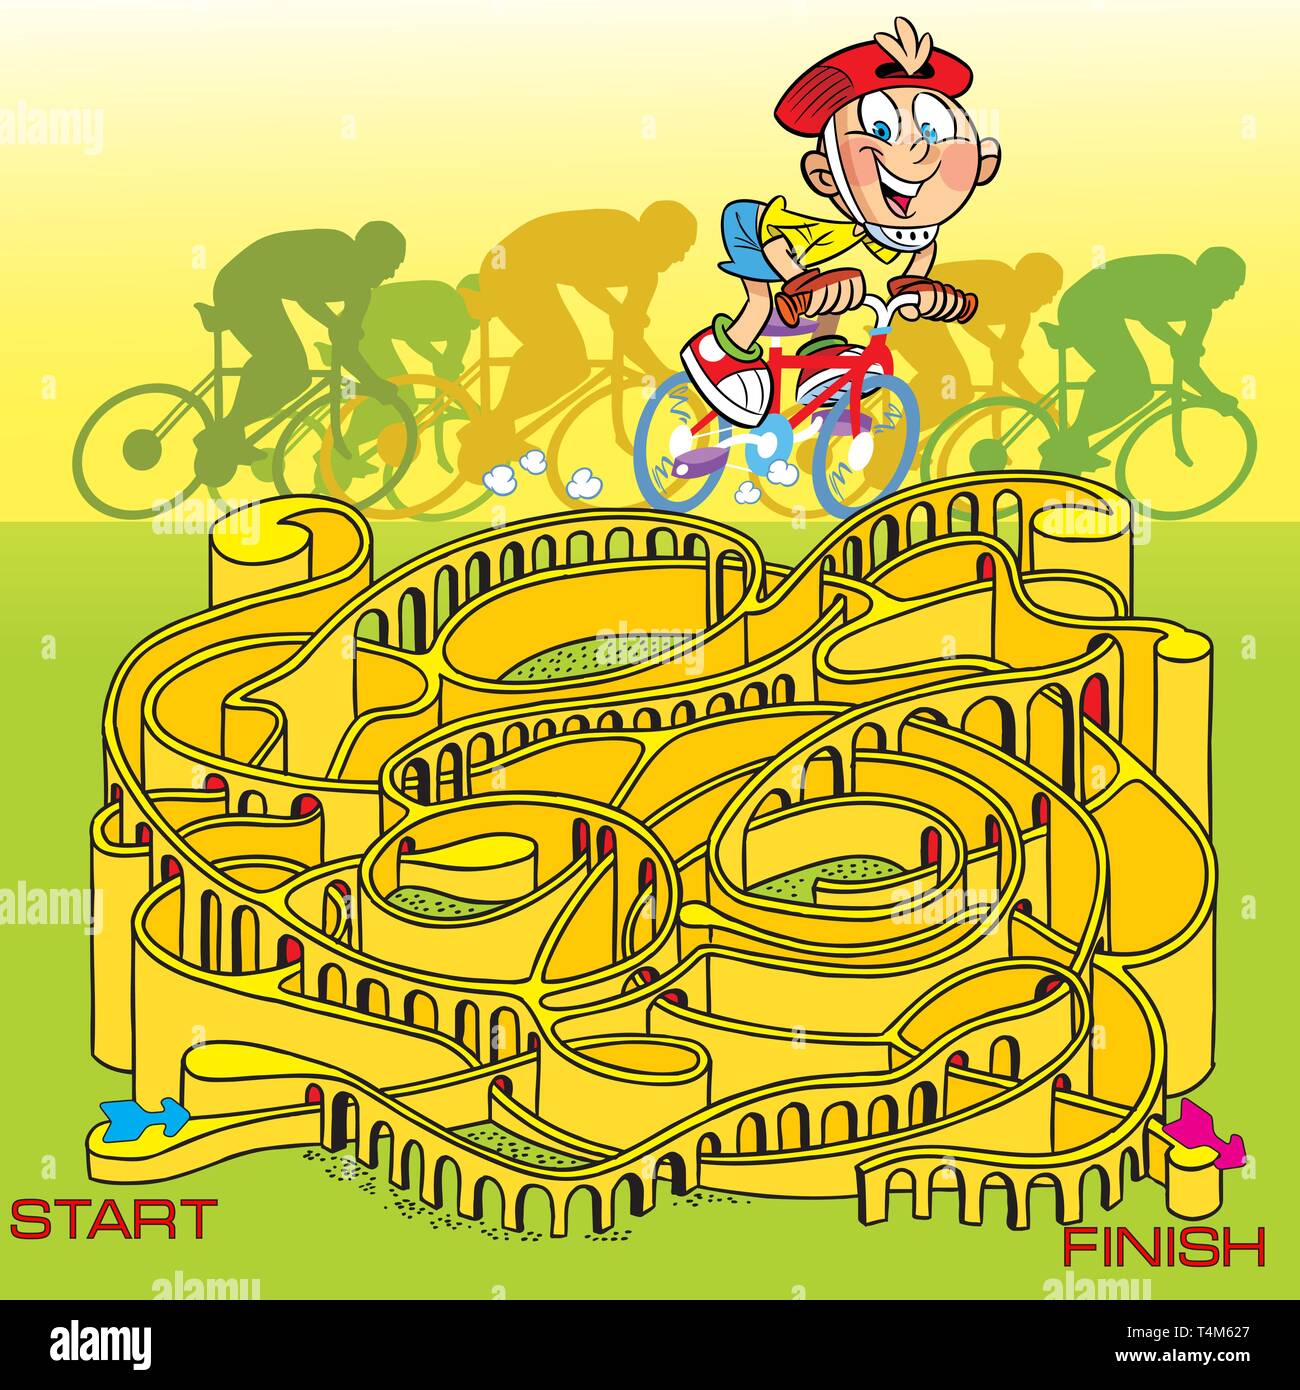 Dans l'illustration vectorielle, un casse-tête avec un garçon sur un vélo, il a besoin de conduit dans un labyrinthe Illustration de Vecteur